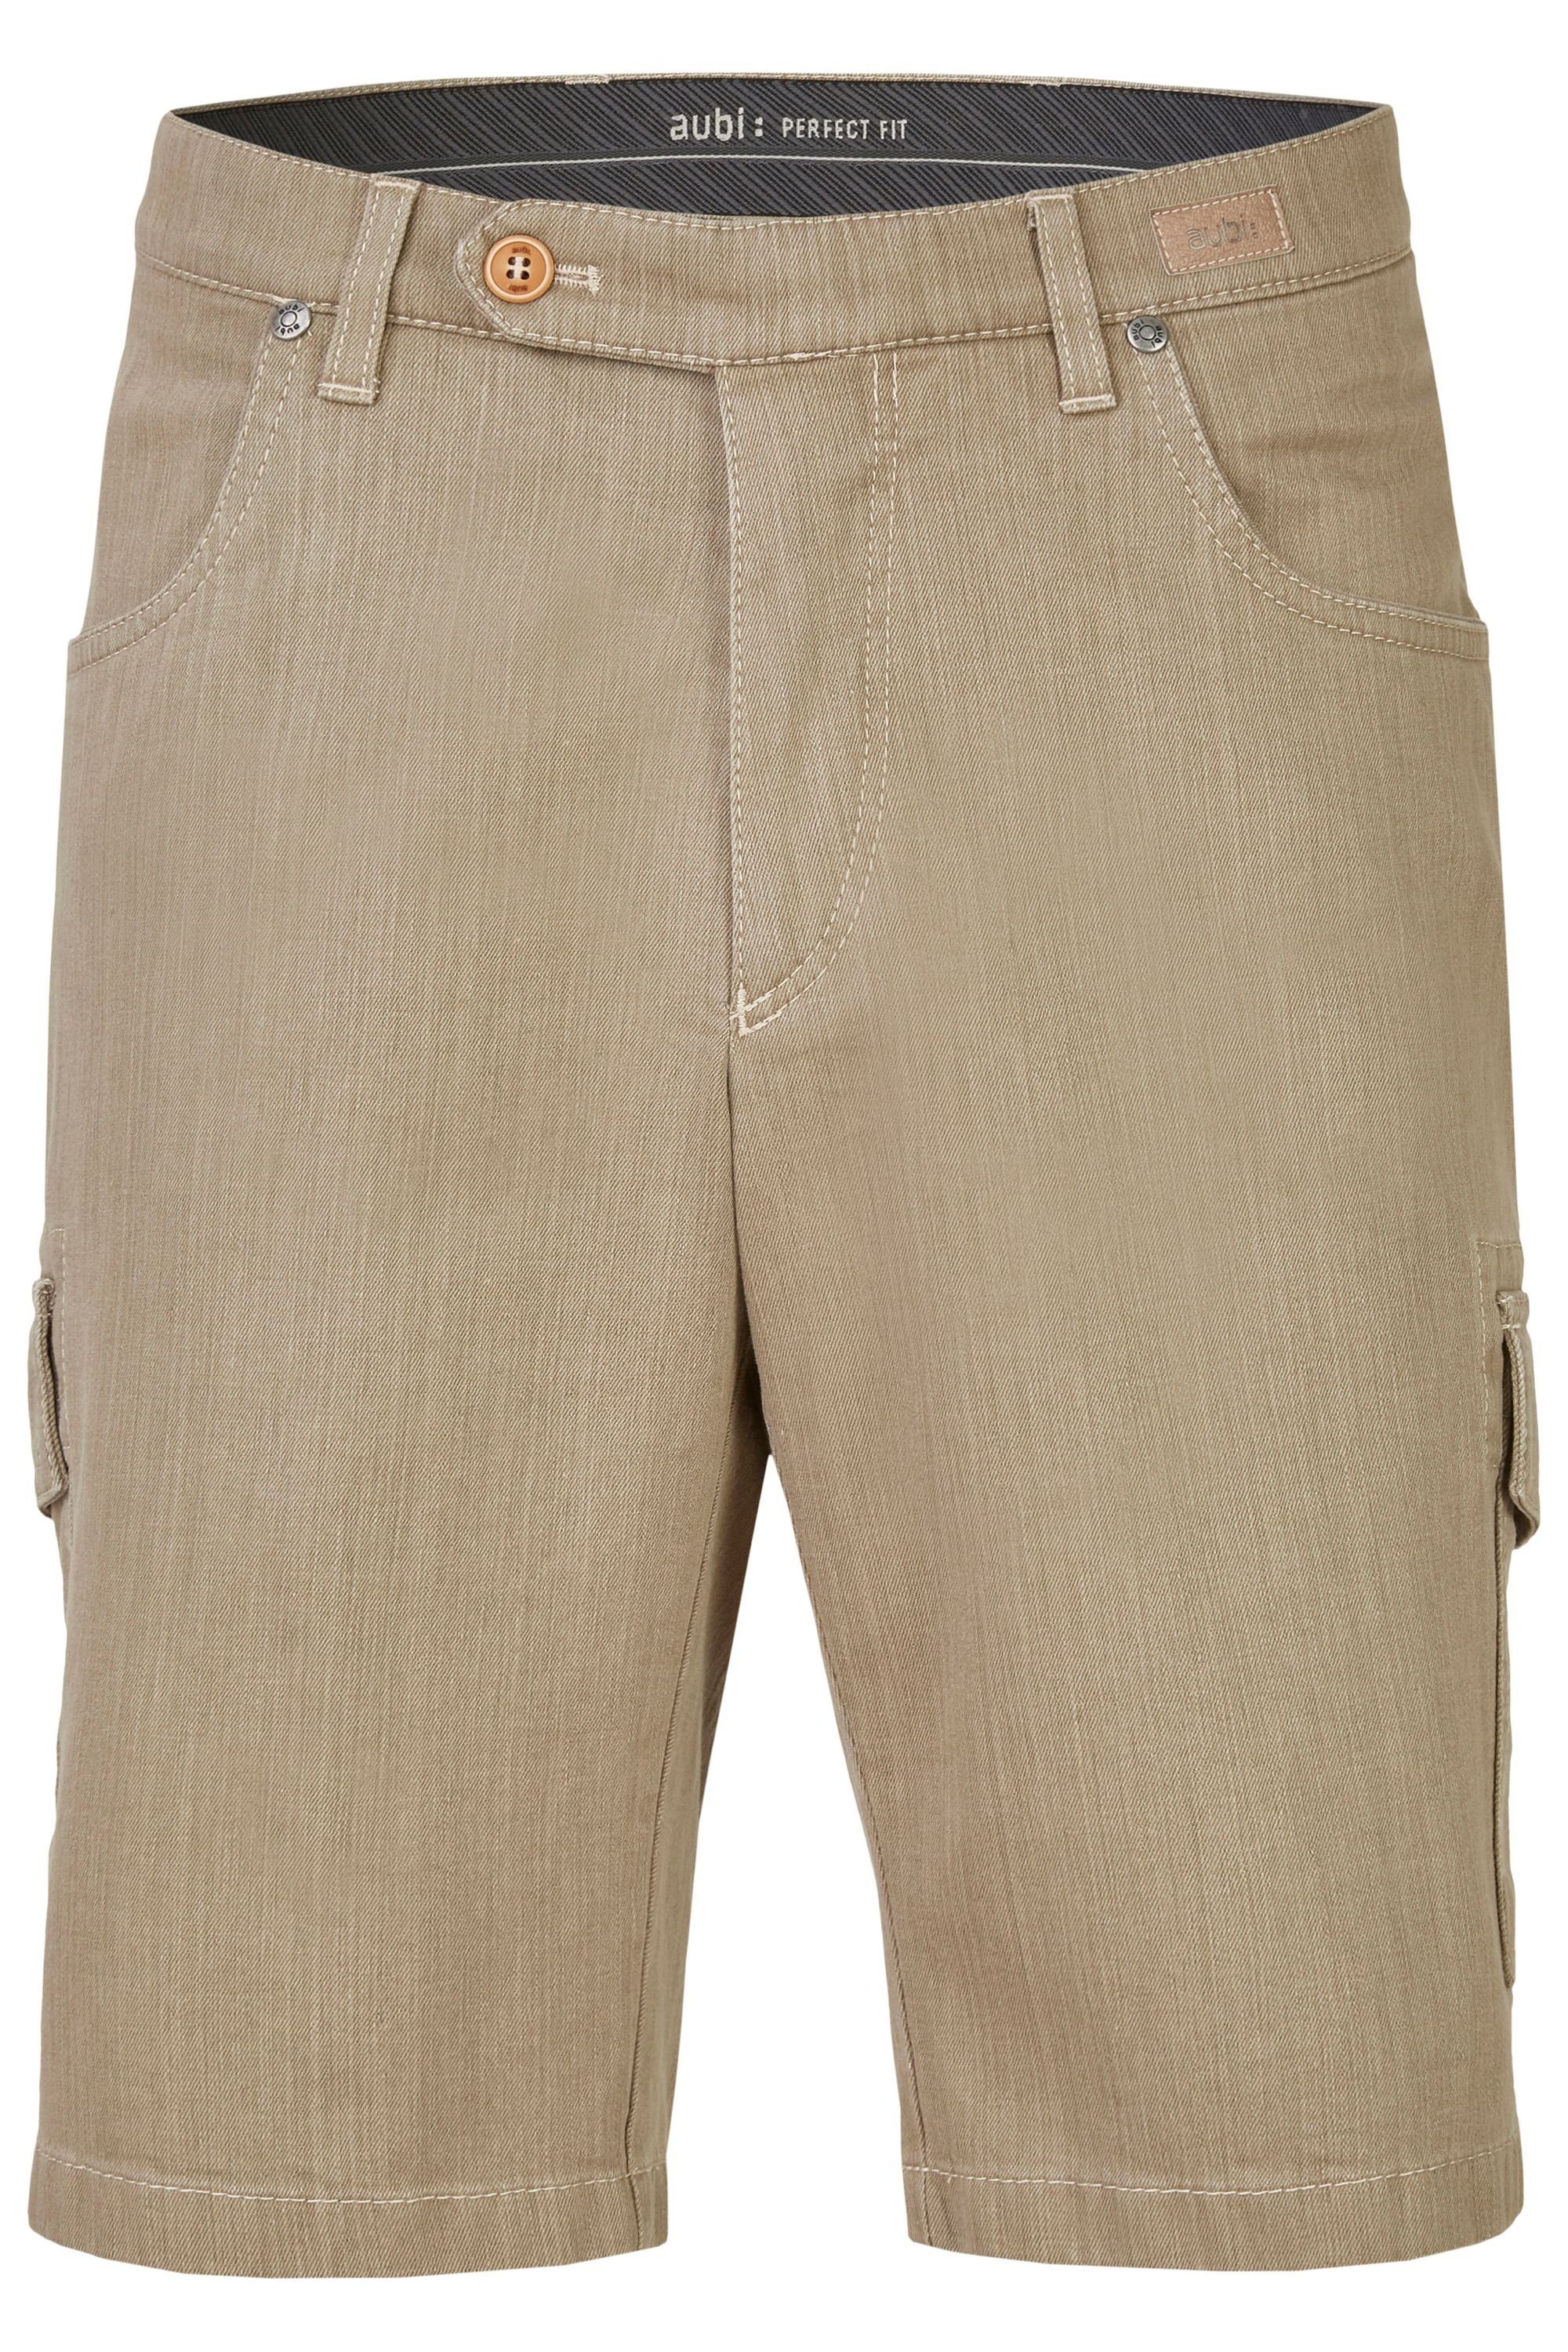 Flex 616 Sommer Bequeme Herren Stretch Cargo beige (21) Jeans Jeans High Perfect Baumwolle aubi Shorts aubi: aus Modell Fit